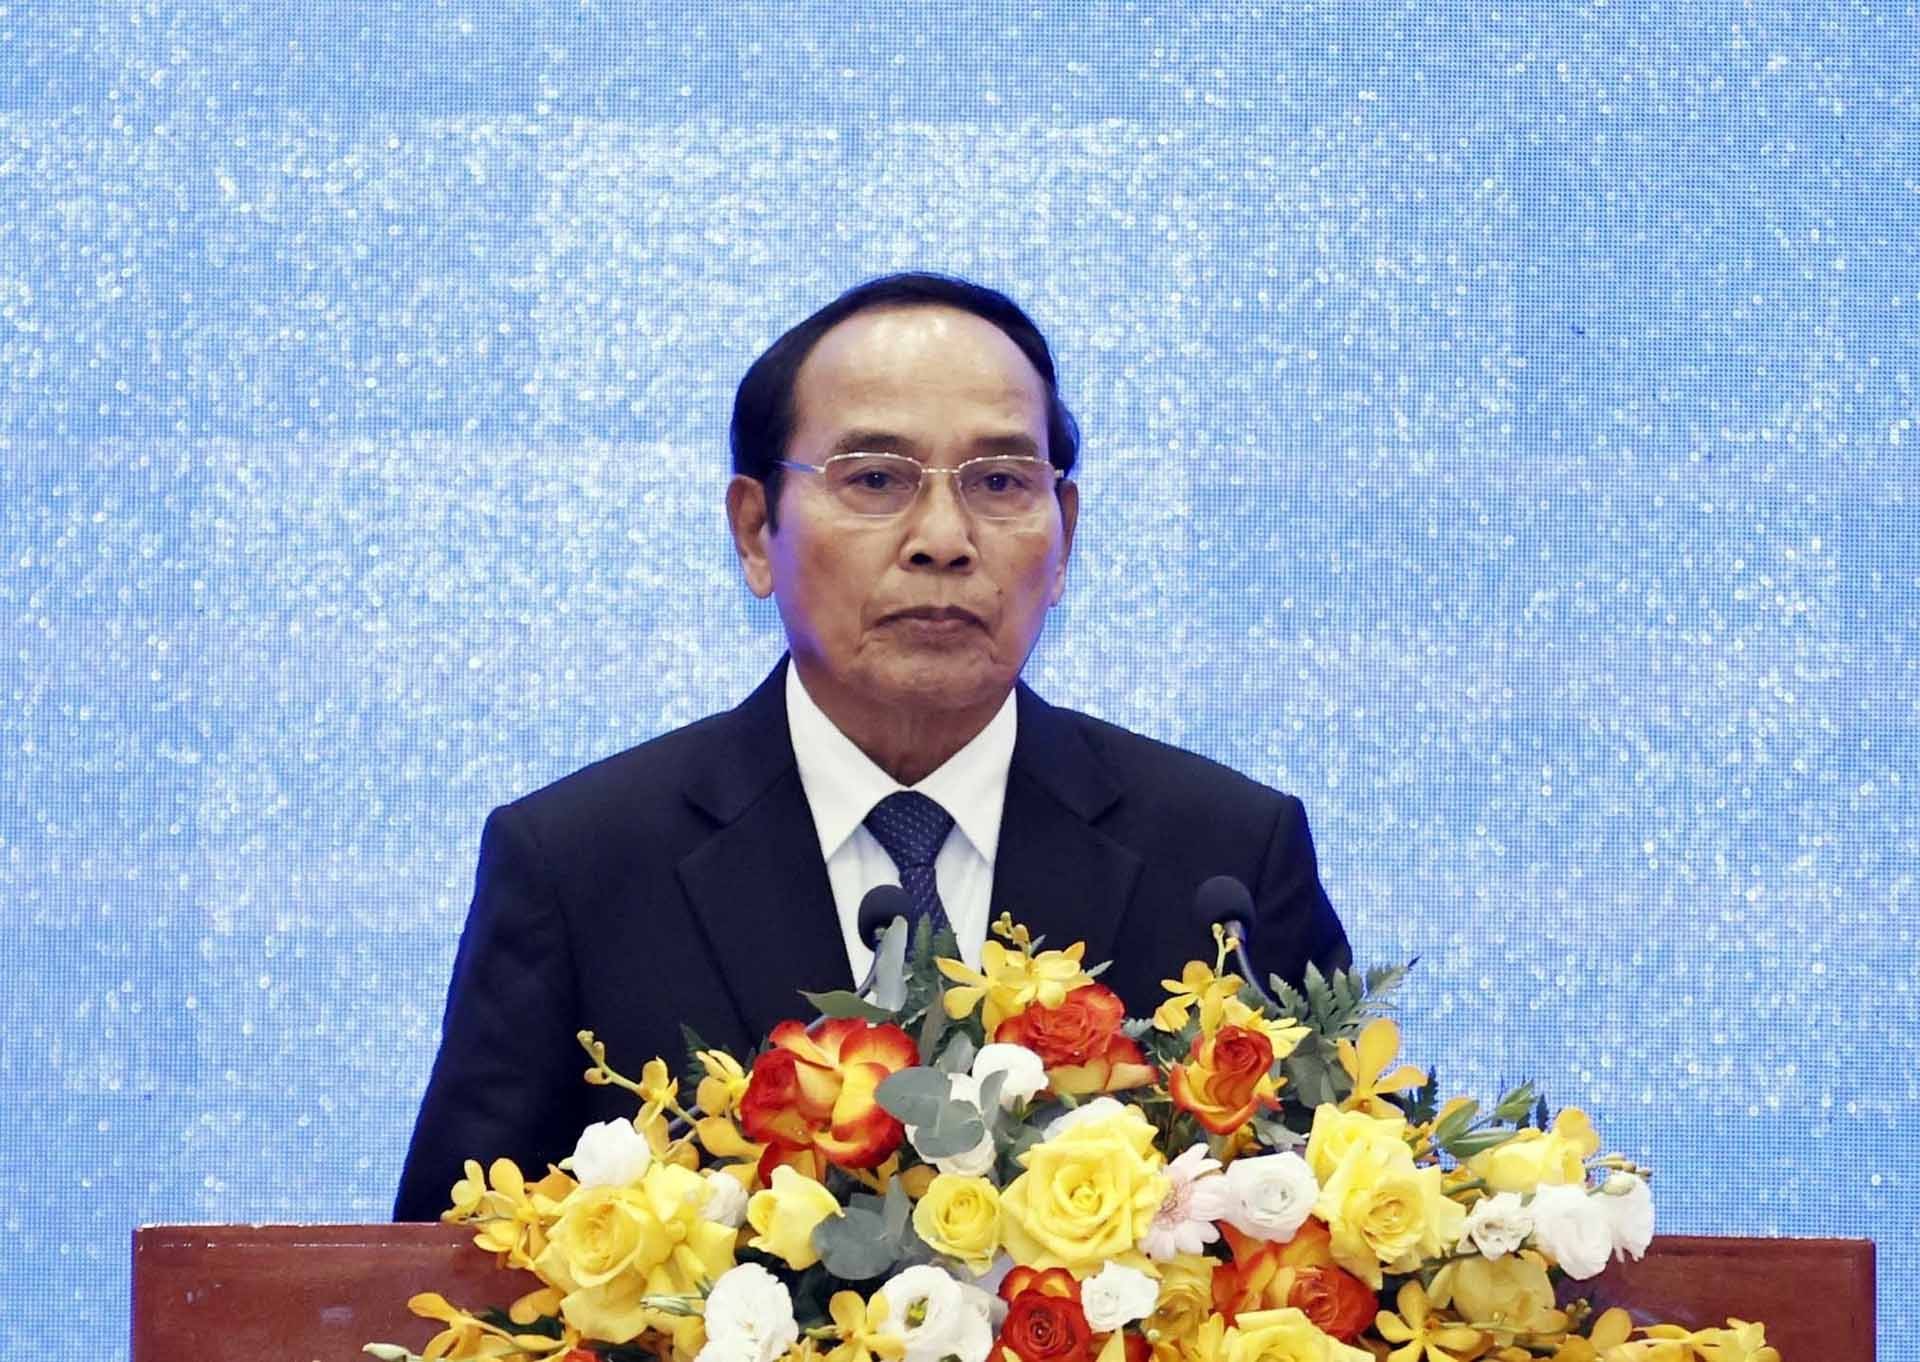 Đồng chí Bounthong Chitmany, Ủy viên Bộ Chính trị, Thường trực Ban Bí thư, Phó Chủ tịch nước Lào phát biểu tại buổi lễ. Ảnh: (Nguồn: TTXVN)